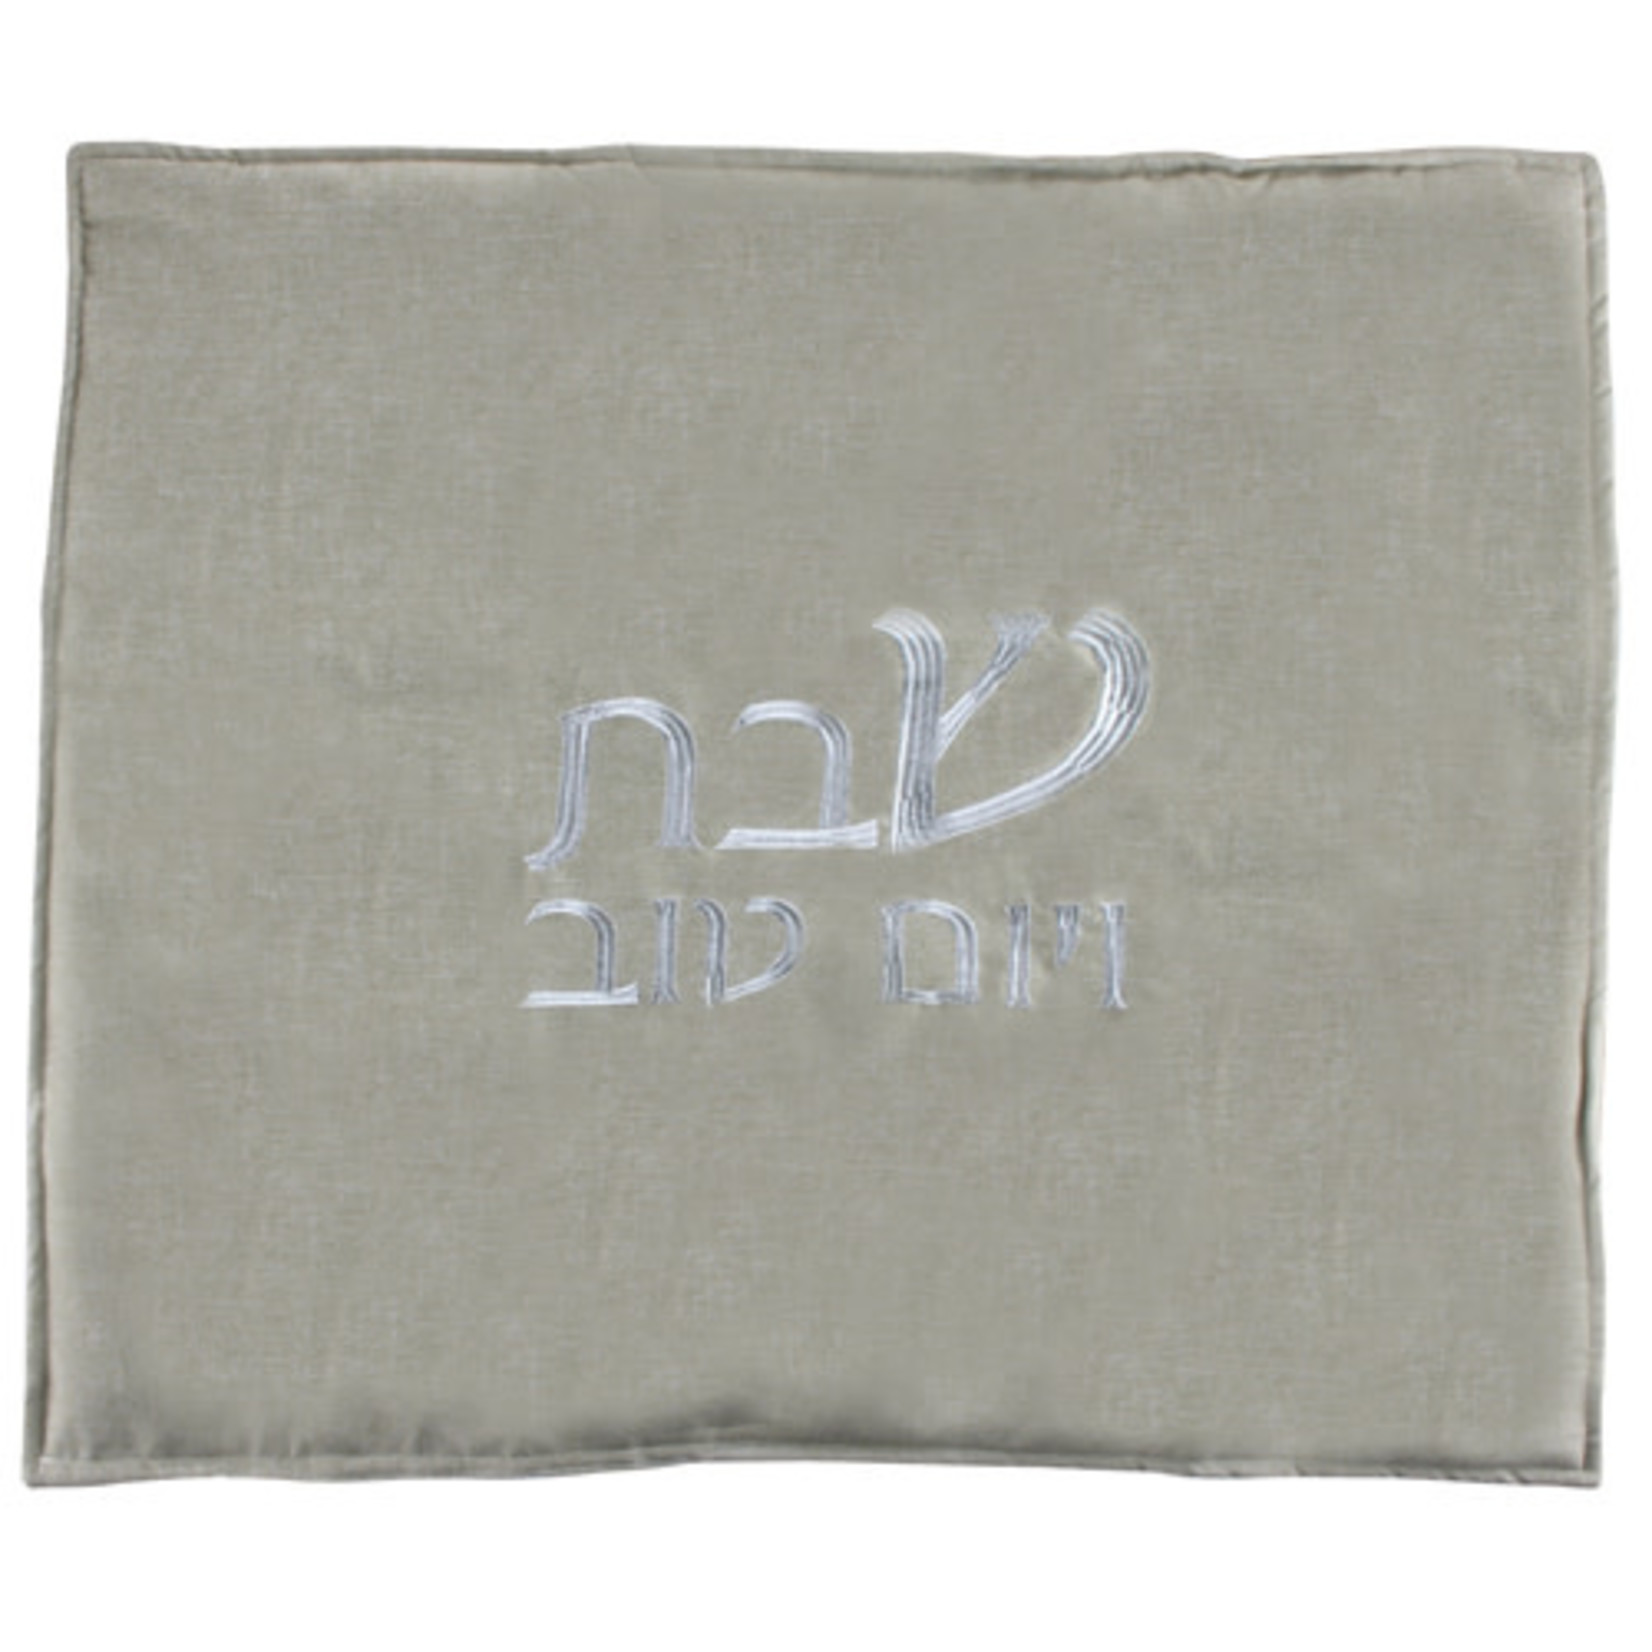 Shabbat Warming Tray Cover